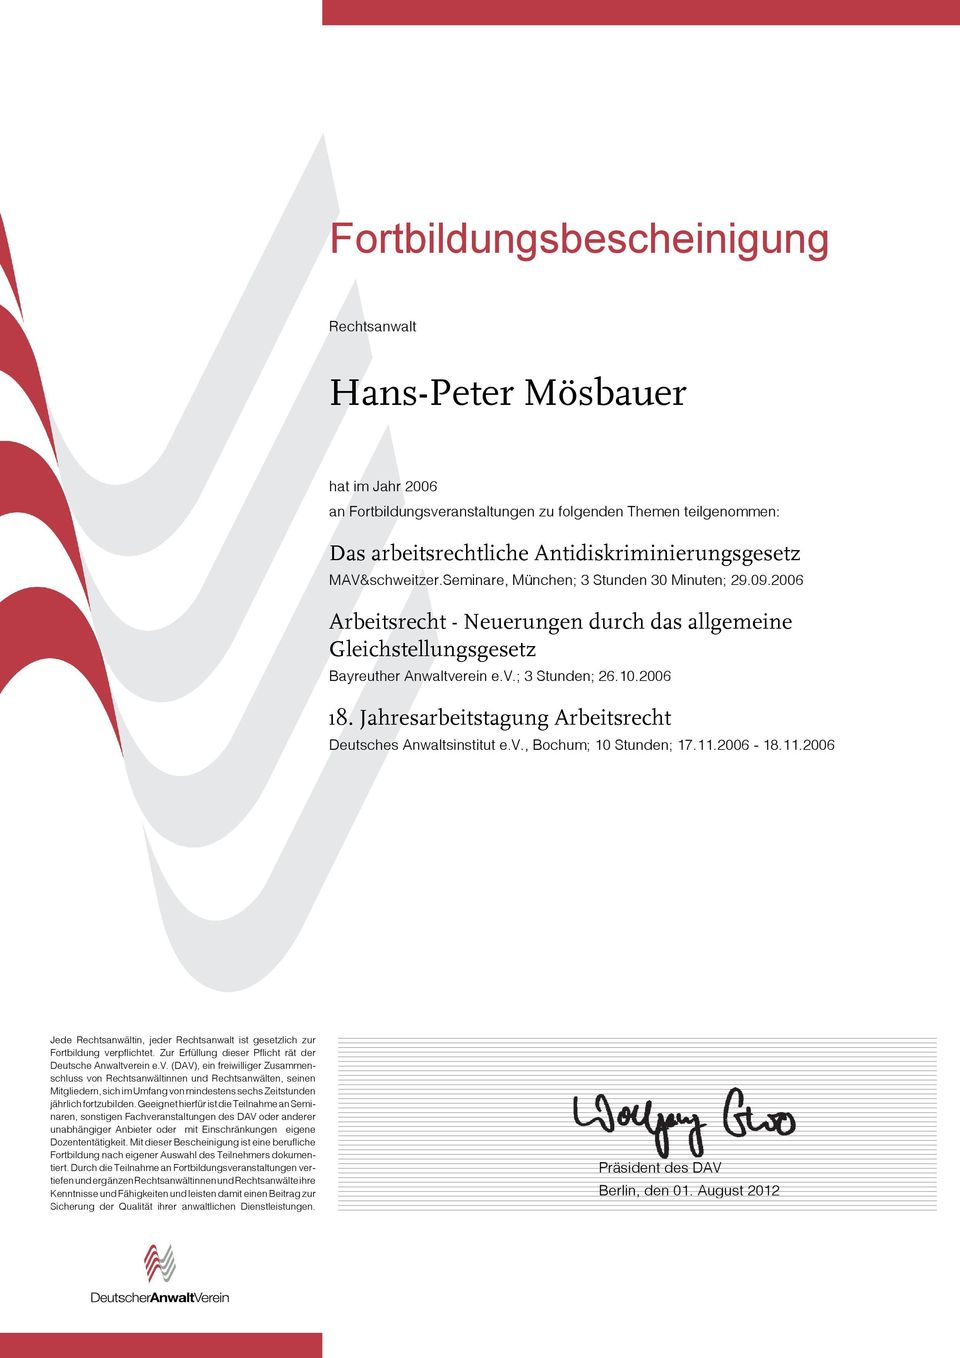 2006 Arbeitsrecht - Neuerungen durch das allgemeine Gleichstellungsgesetz Bayreuther Anwaltverein e.v.; 3 Stunden; 26.